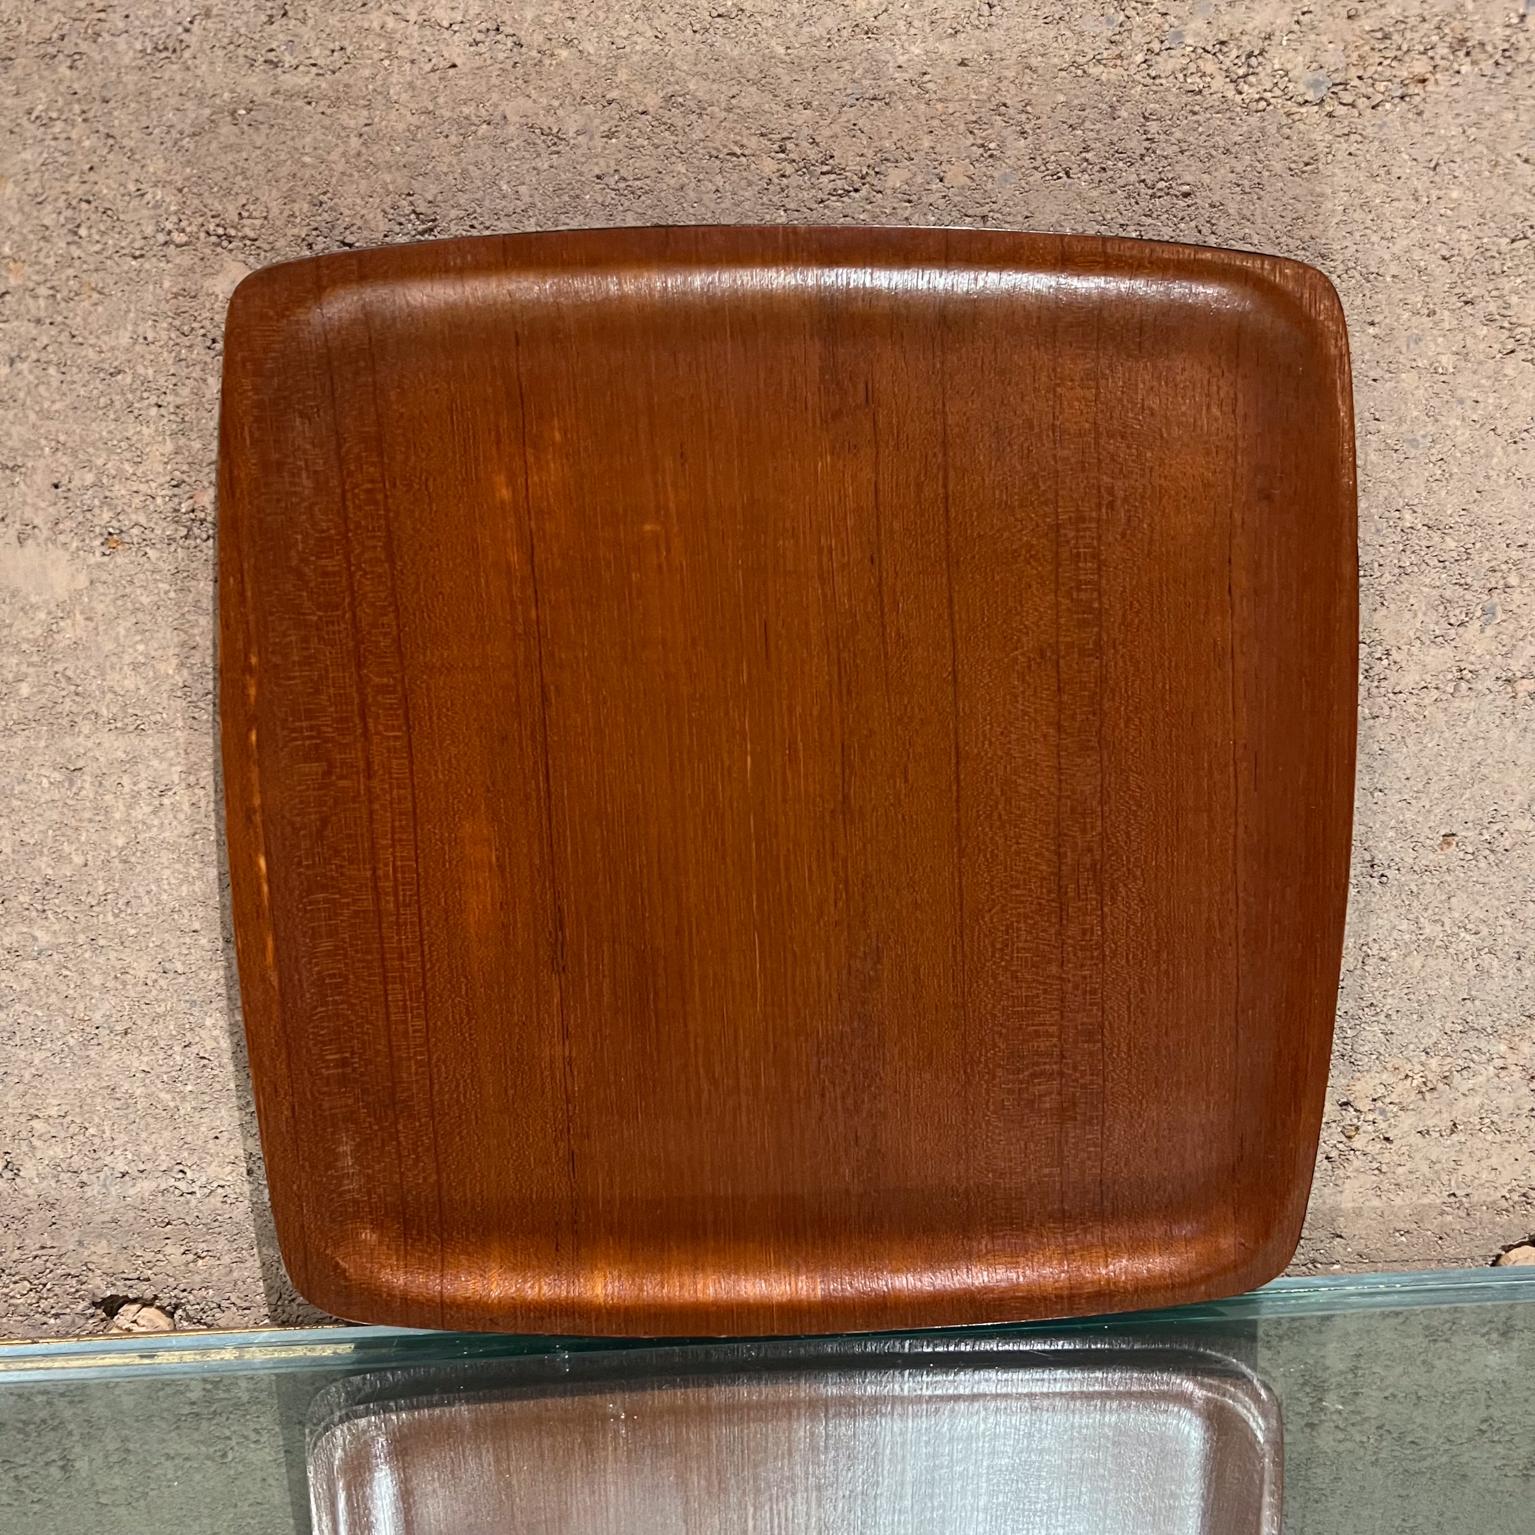 
1970er Vintage Quadrat Teak gebogen Sperrholz servieren Barware Tablett
13,88 x 13,88 x 0,5 d
Gebrauchter originaler Vintage-Zustand, siehe aufgelistete Bilder.